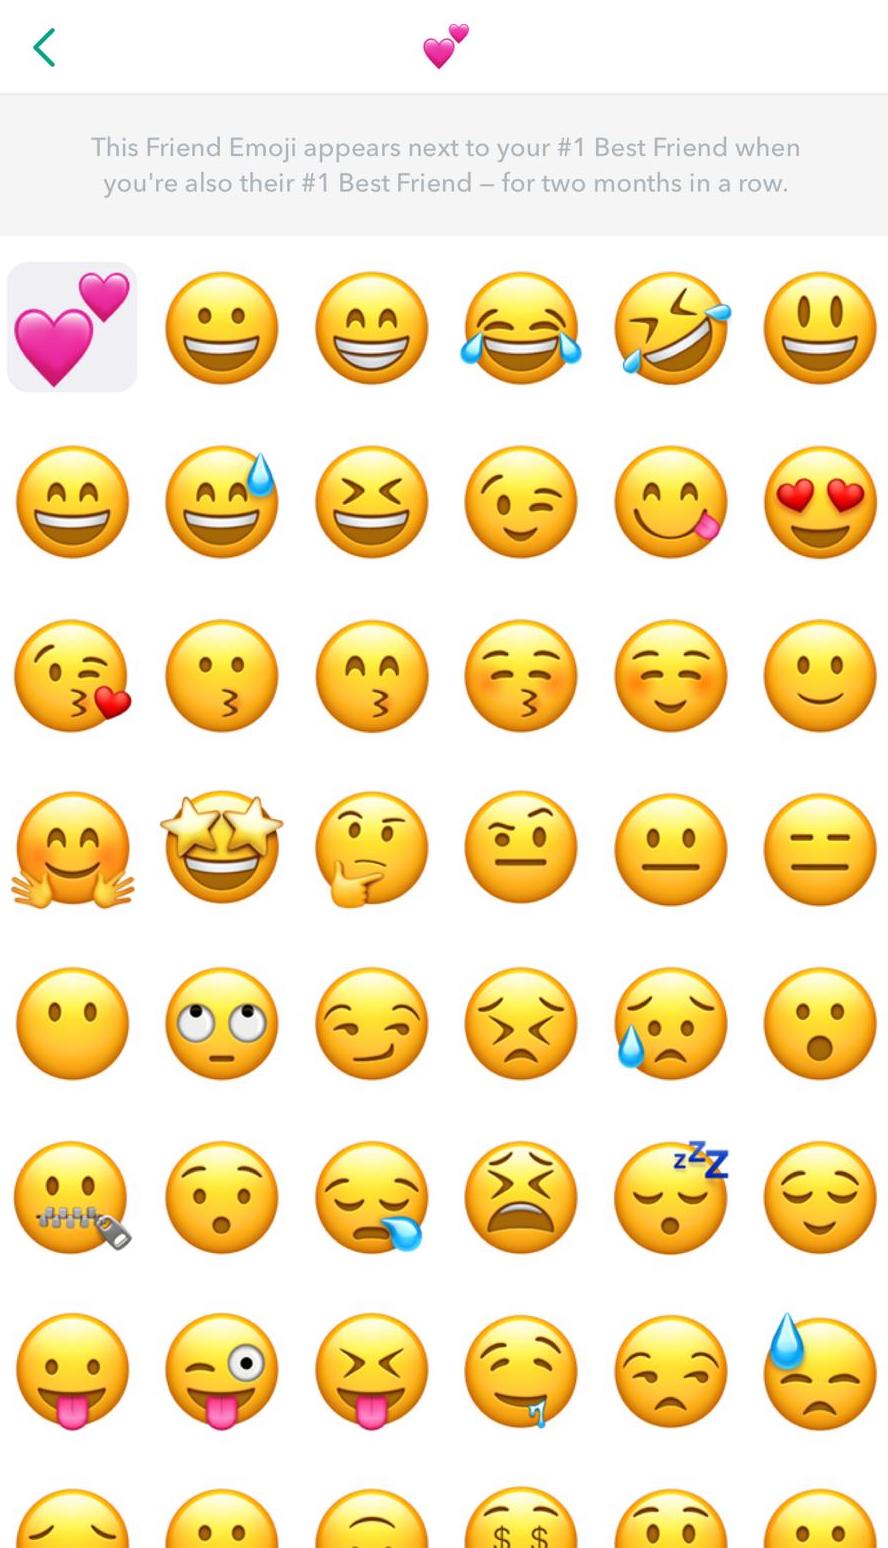 Personalitzar els emojis de Snapchat